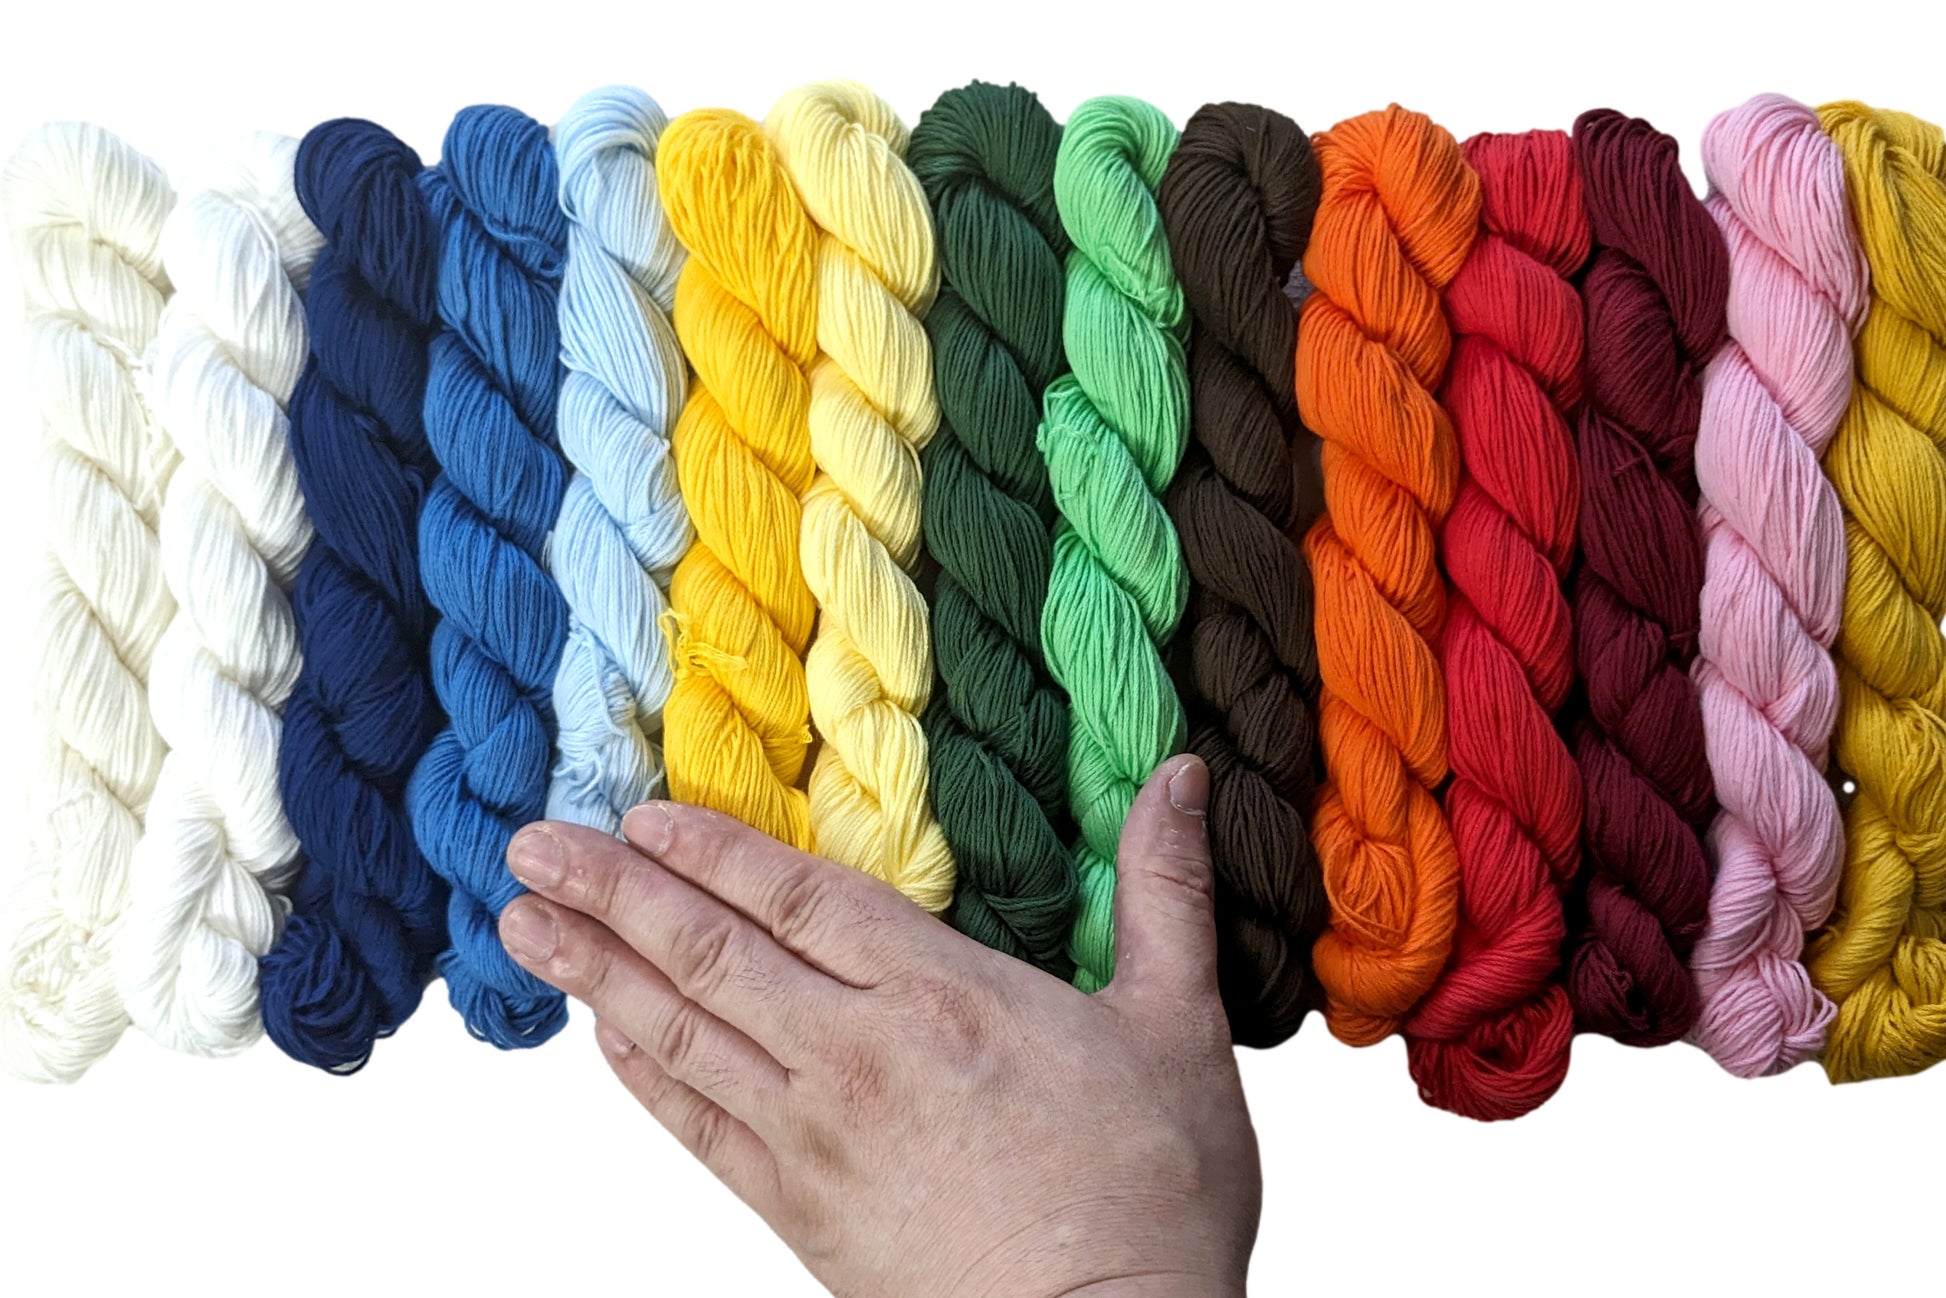 Indigo Dye Sashiko Thread | Hand Dyed